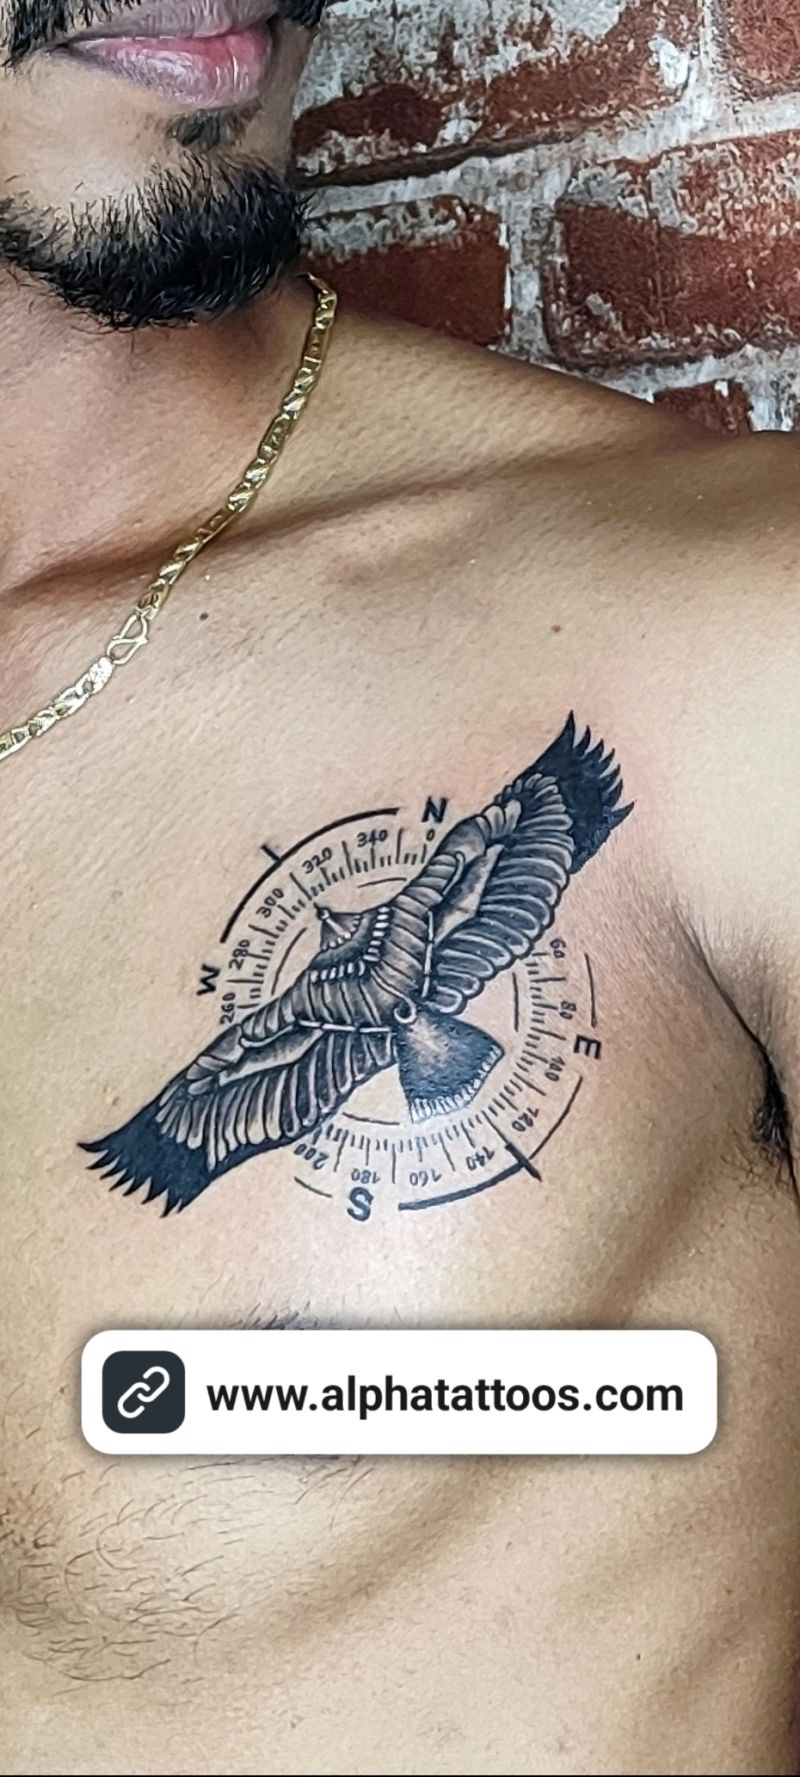 Alpha Tattoos - Tattoo Artist - Alpha Tattoo shop chennai | LinkedIn